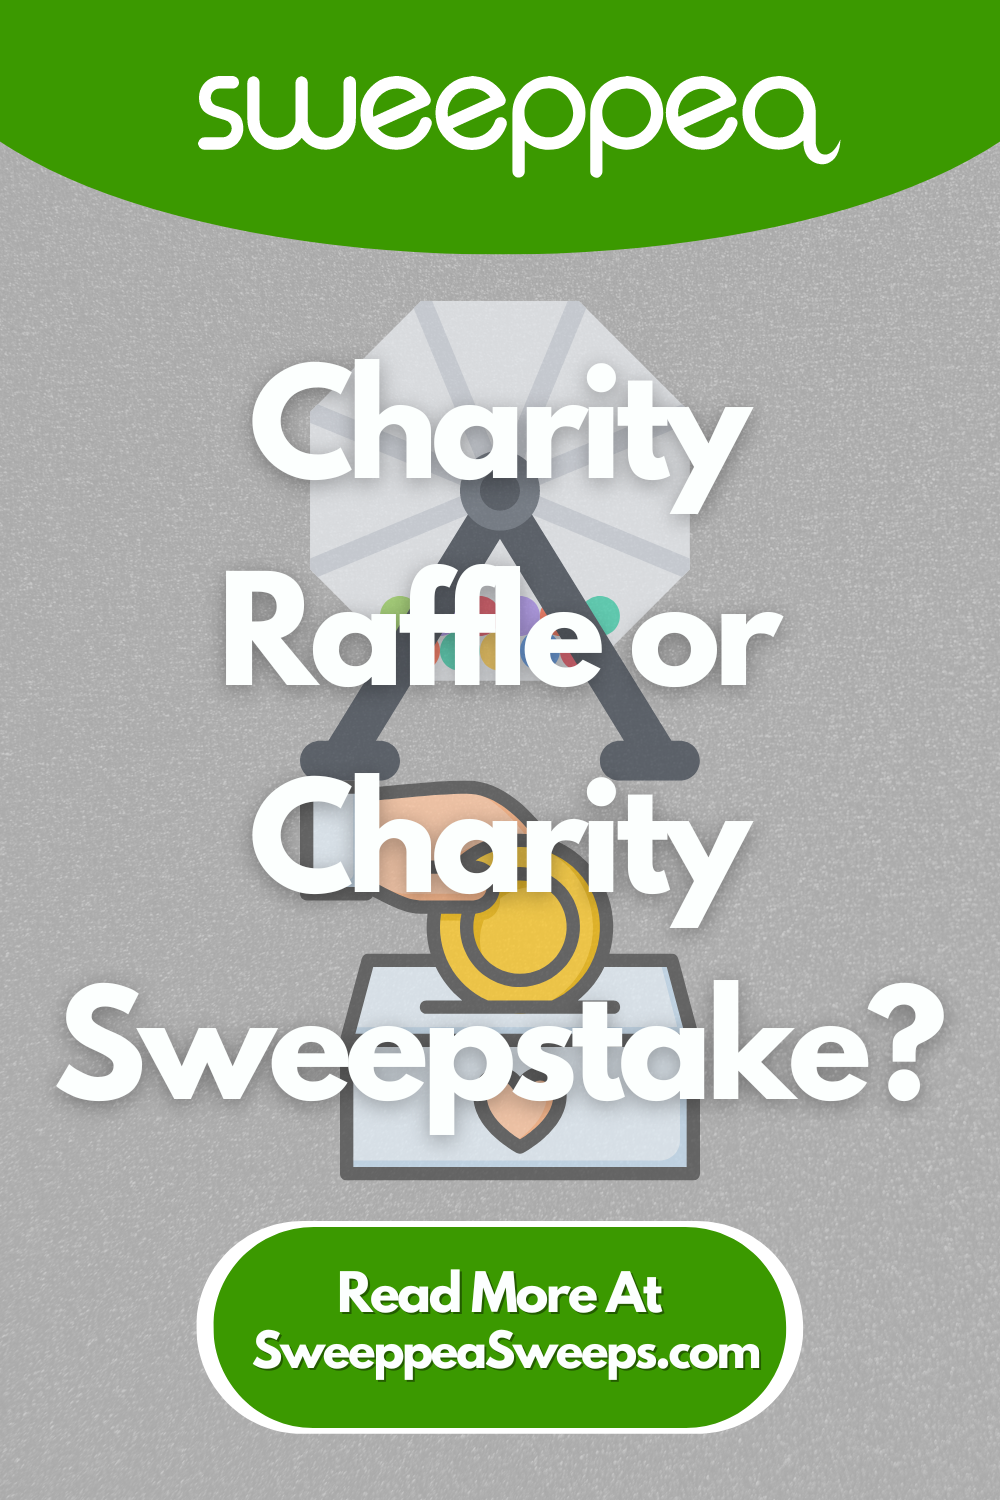 Charity Raffle or Charity Sweepstake